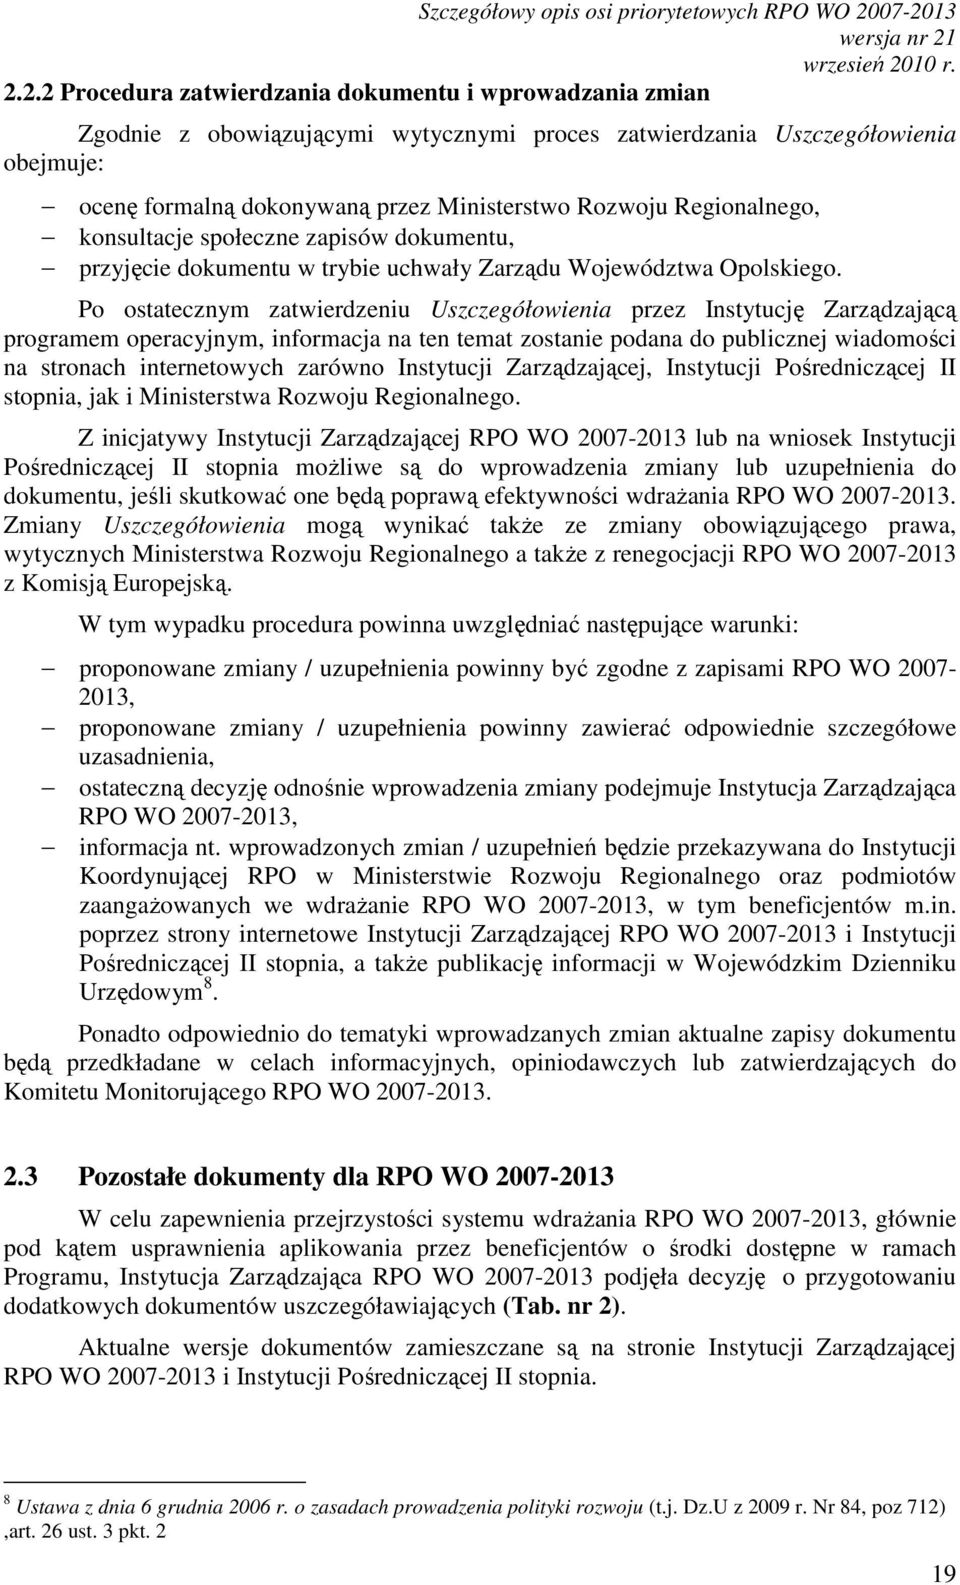 Rozwoju Regionalnego, konsultacje społeczne zapisów dokumentu, przyjęcie dokumentu w trybie uchwały Zarządu Województwa Opolskiego.